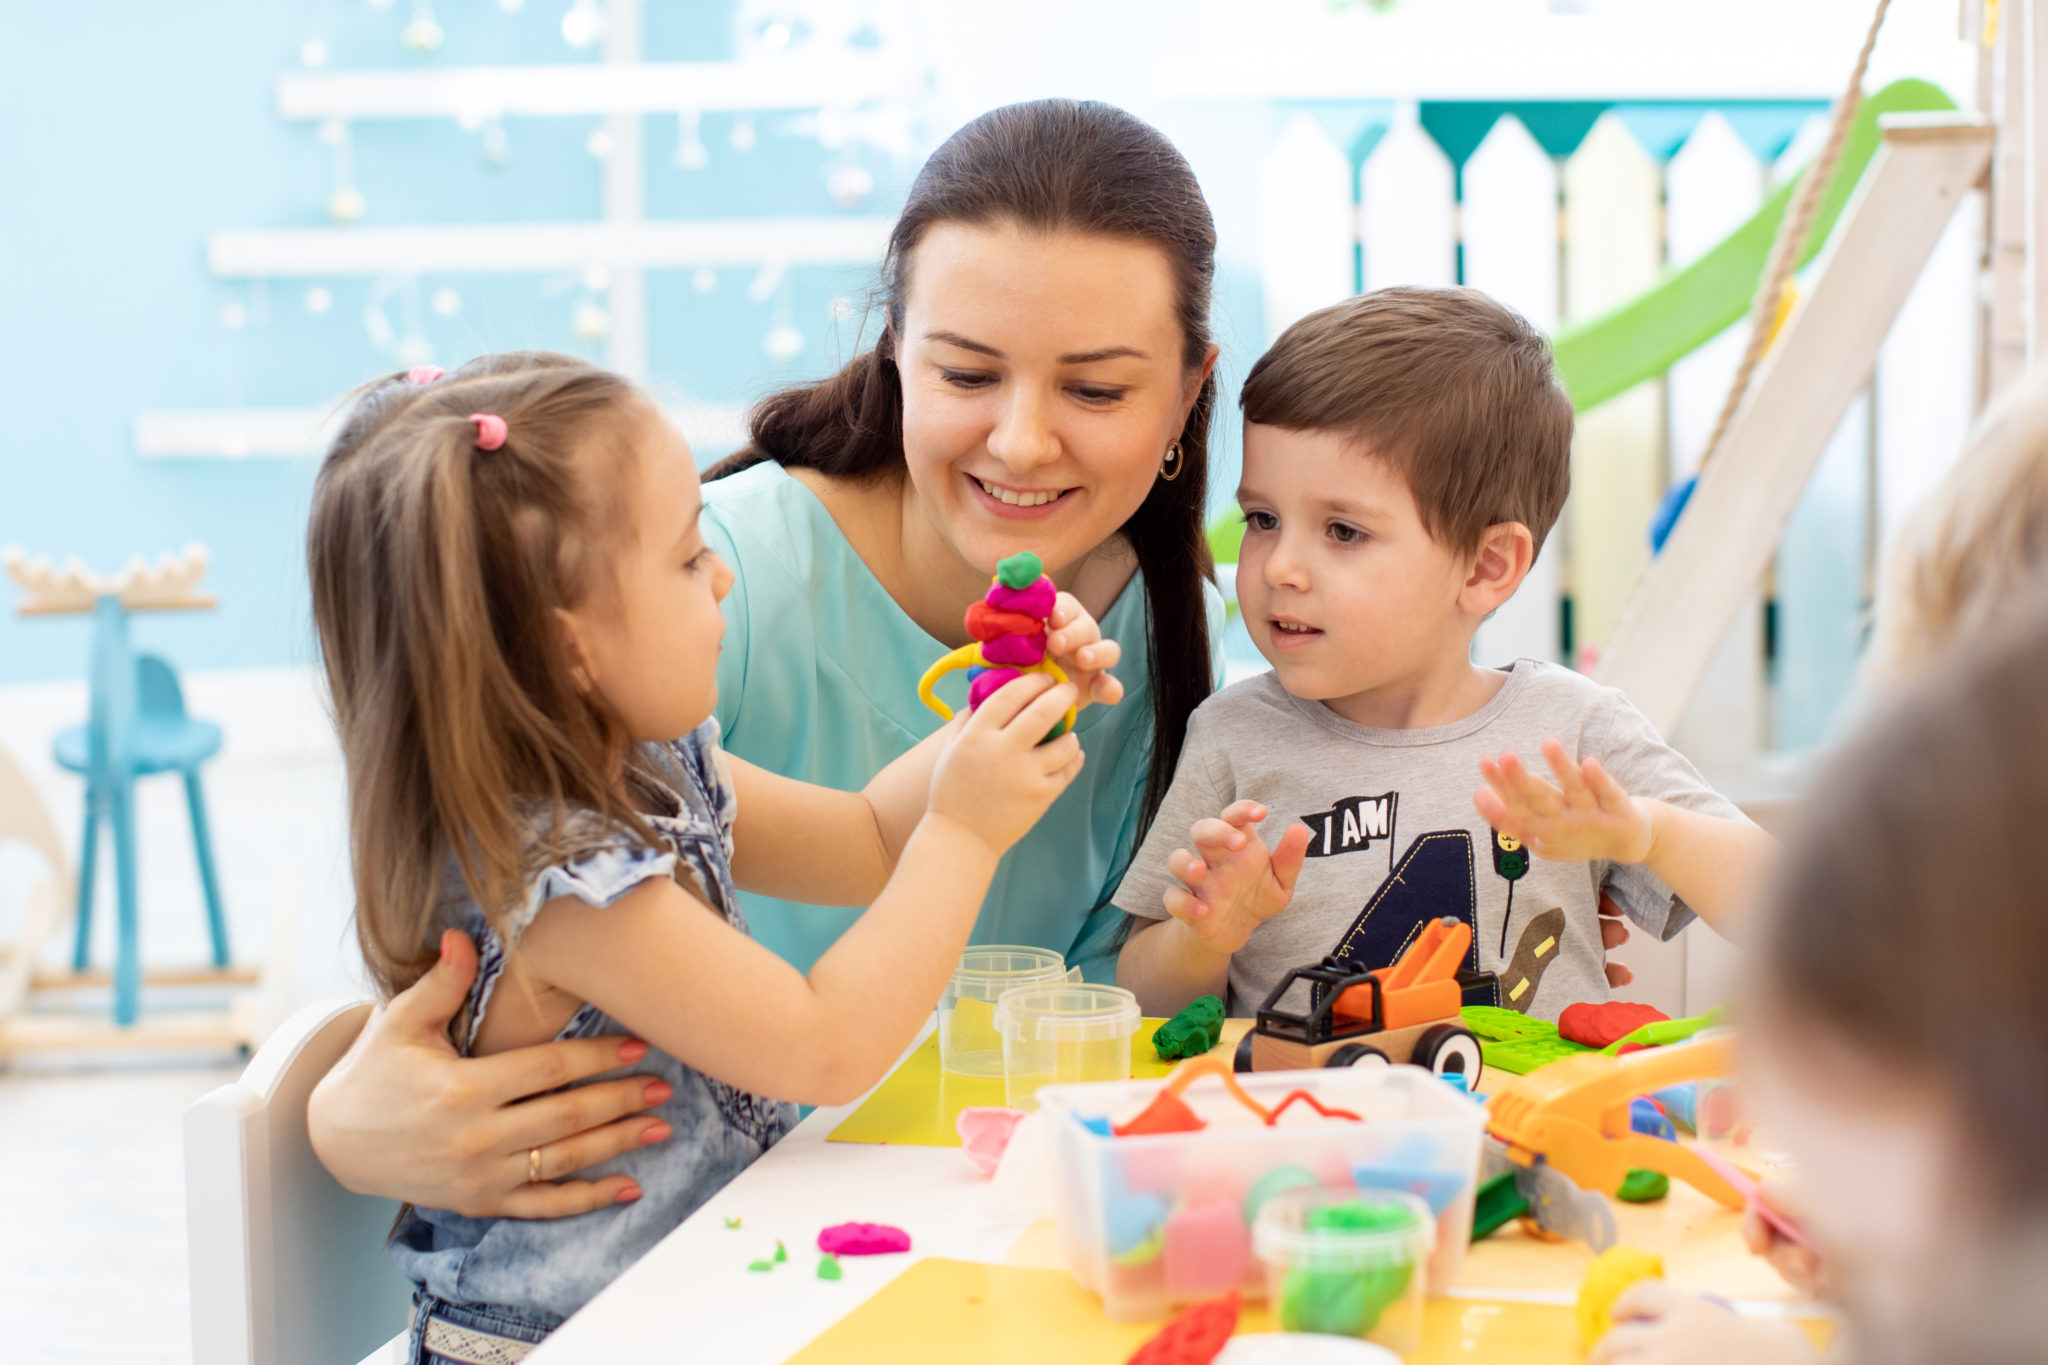 Une femme est assise à une table avec deux enfants, ils jouent avec des jouets colorés en pâte à modeler. En jouant ensemble avec nos éducateurs, il s'agit d'établir une profonde relation de confiance entre les enfants et nos animateurs. C'est essentiel pour une vie commune agréable dans nos crèches.